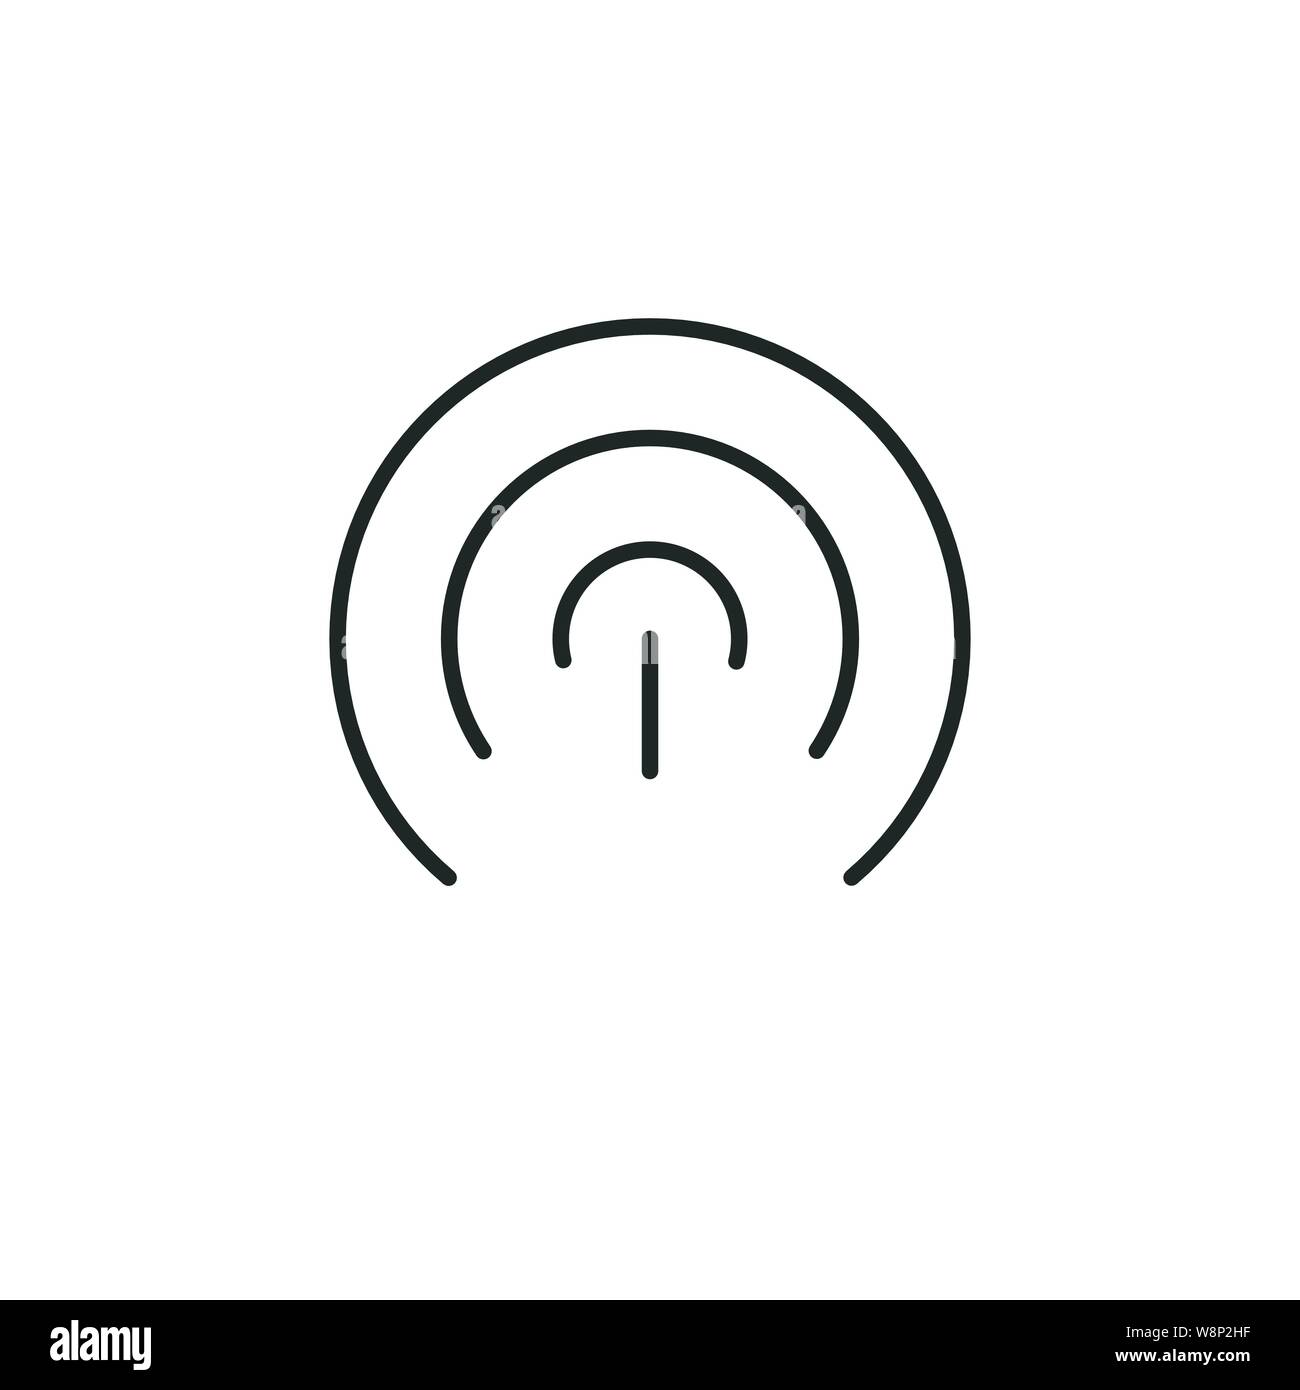 L'icona Wifi. Vettore di accesso WLAN, wireless hotspot wifi segnale SIGN, icona, simbolo. Illustrazione di vettore isolato su sfondo bianco. Illustrazione Vettoriale